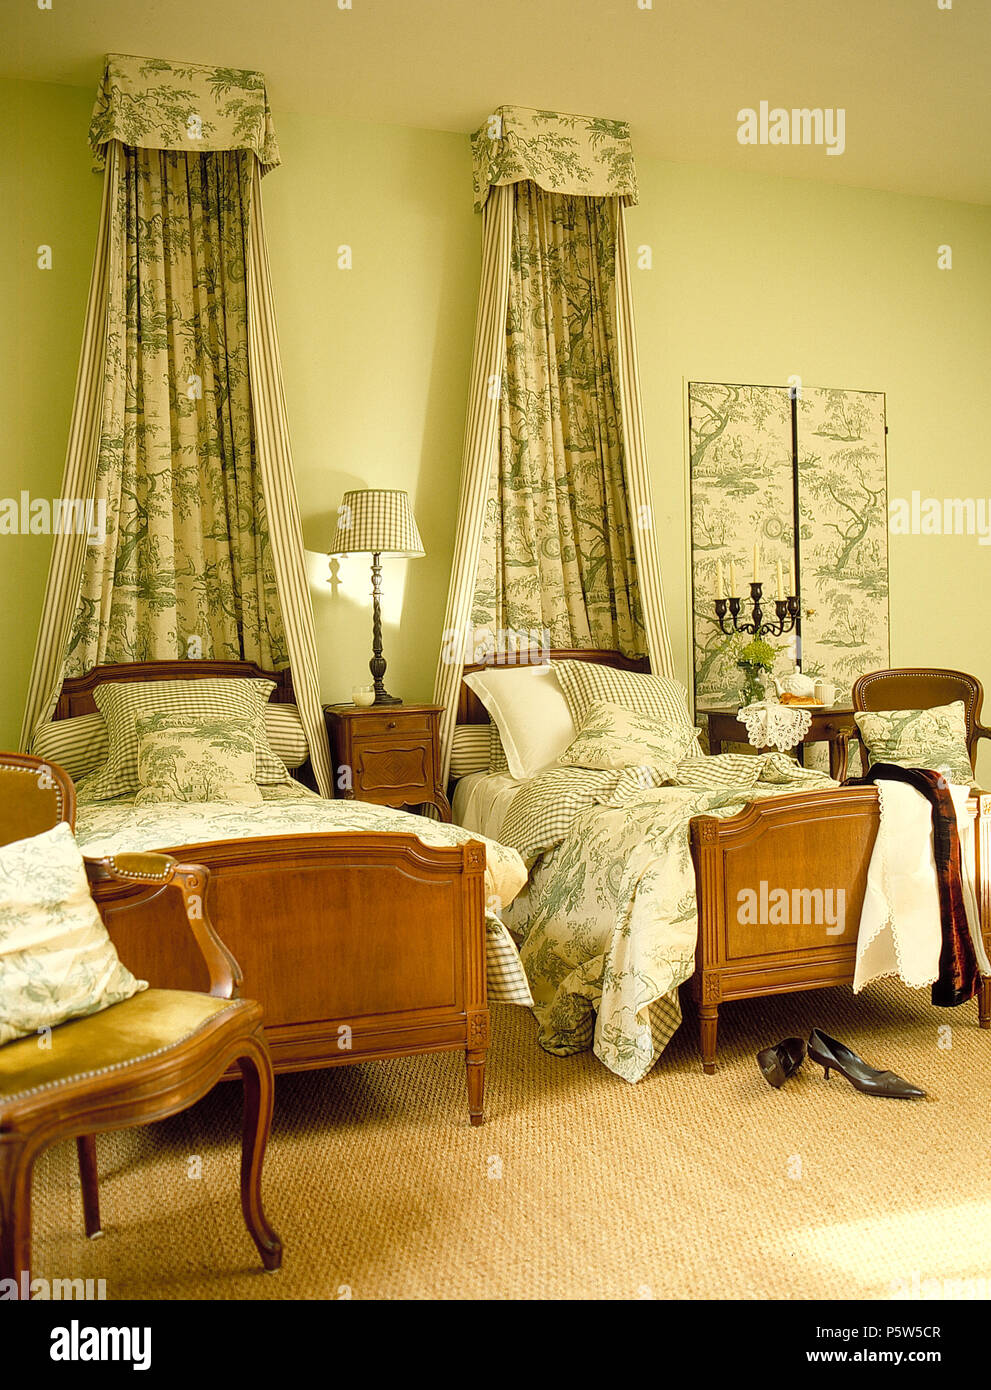 Toile de Jouy vert et couvert de champs au-dessus de lits jumeaux avec couettes Toile correspondant en français pays chambre Banque D'Images